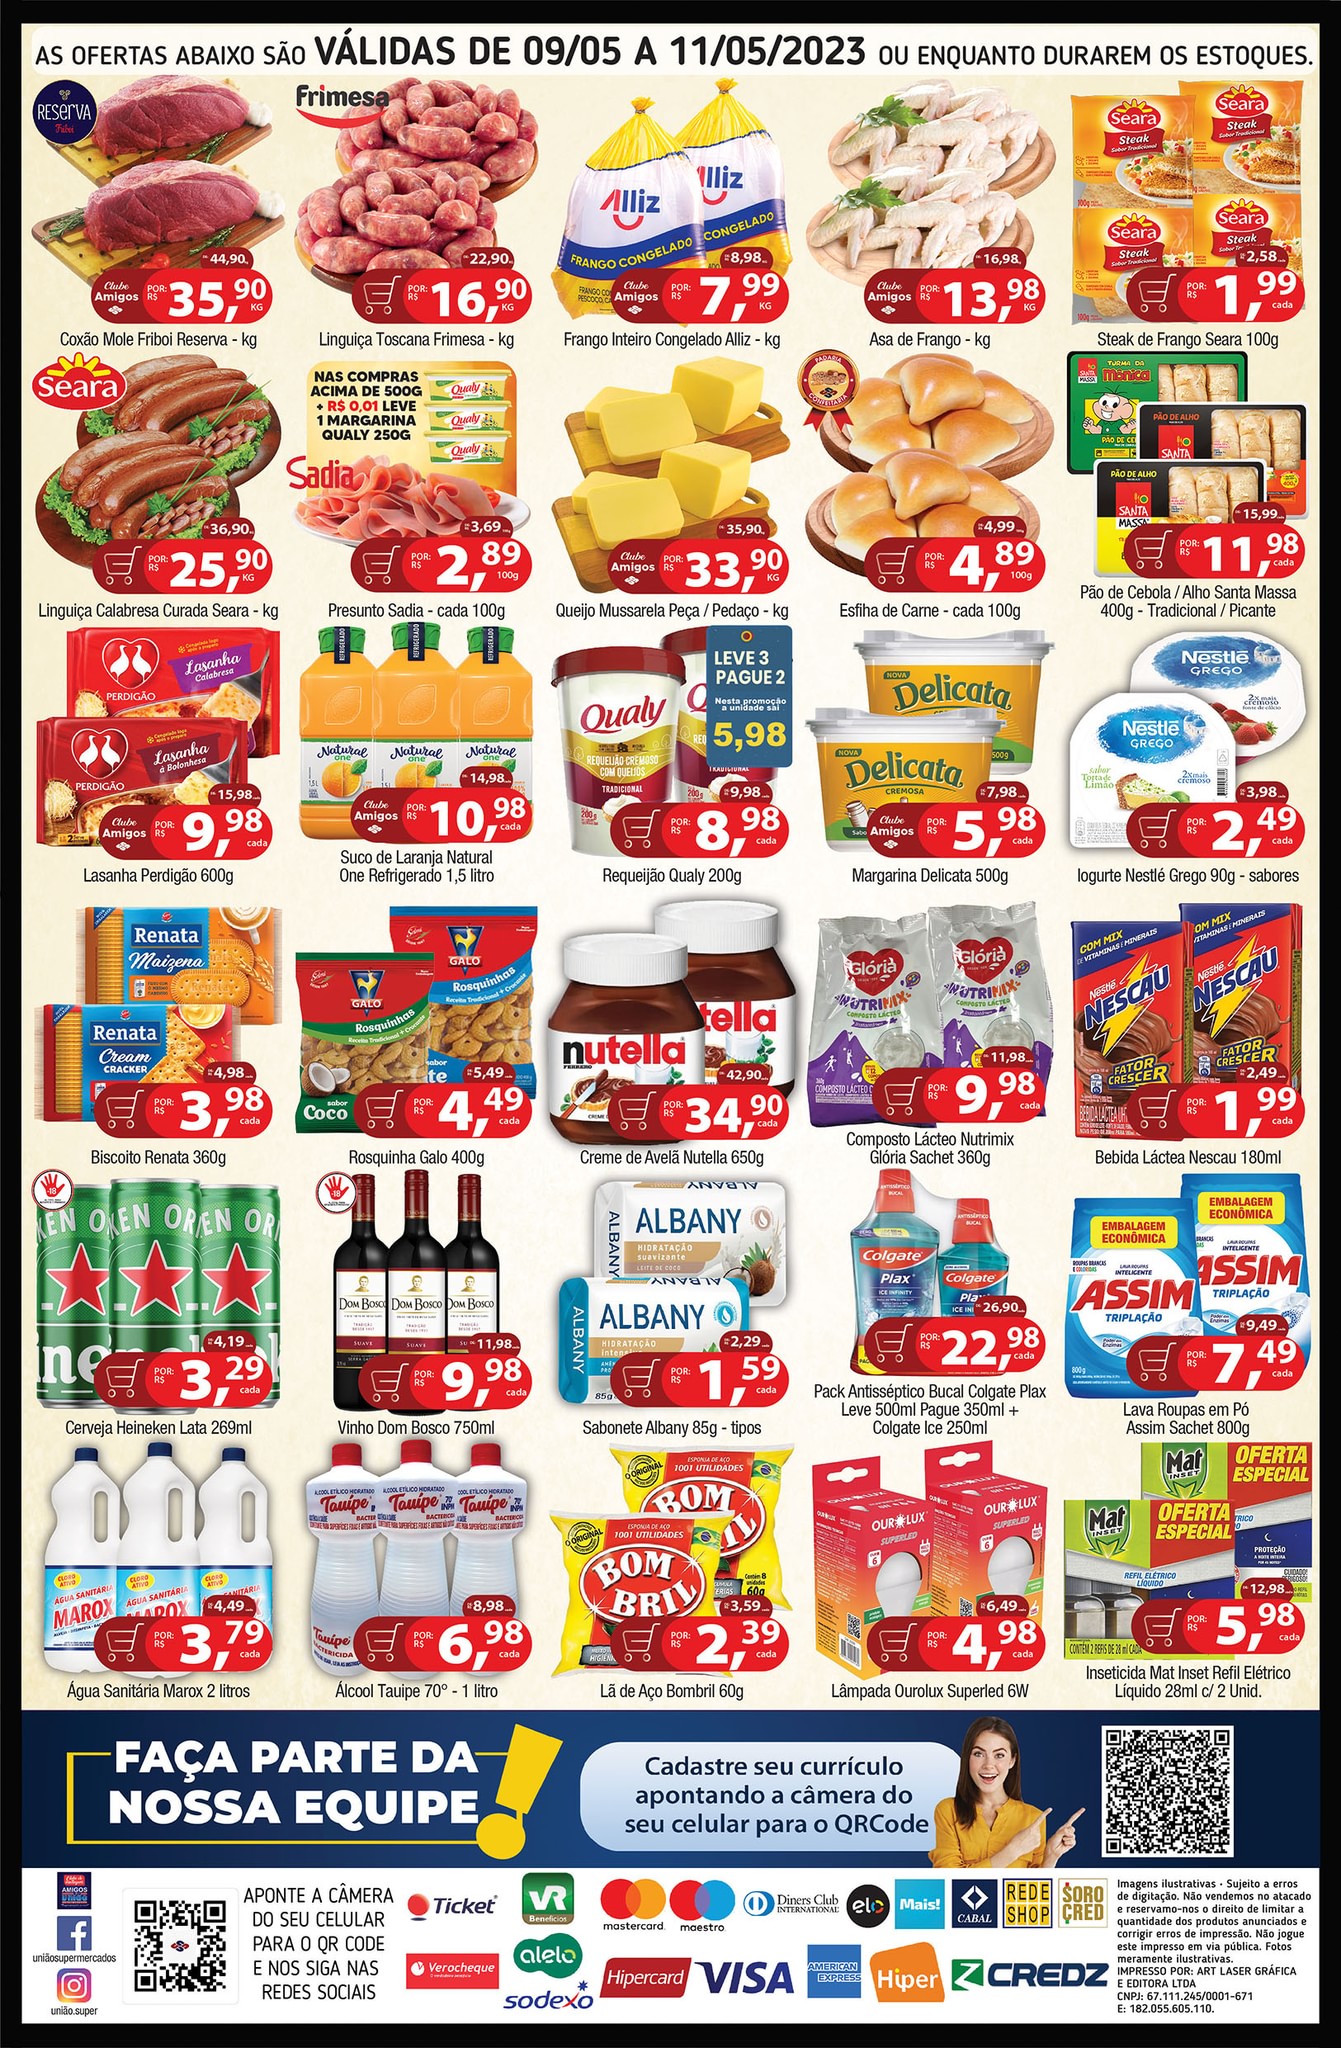 Carnes, hortifrúti, bebidas e muito mais ofertas no União Supermercados